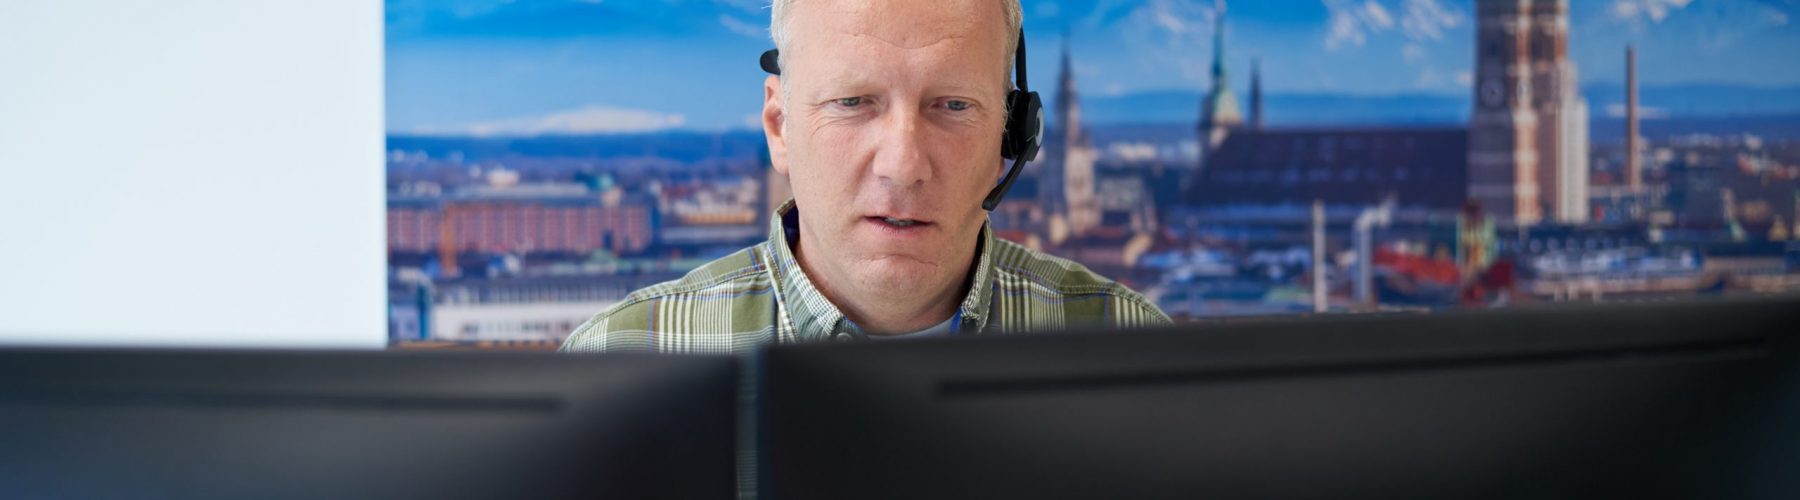 Foto eines Mannes während er an einem Schreibtisch sitzt und am PC arbeitet